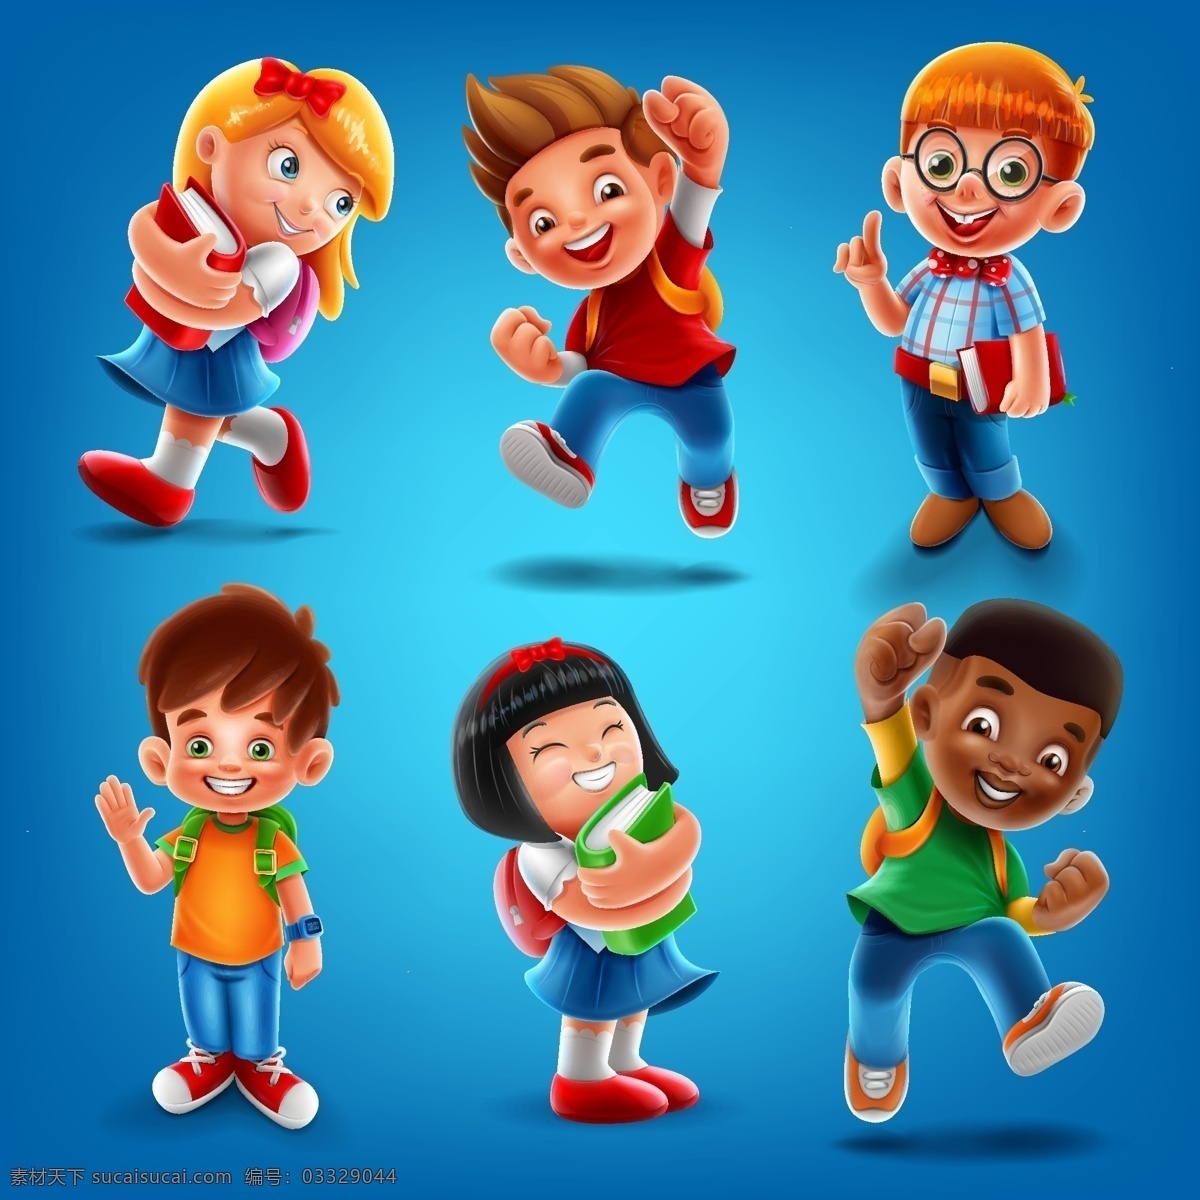 不同 肤色 质感 卡通 儿童 形象 上学的小朋友 小学生 开学了 开心的儿童 快乐的学生 立体 卡通人物形象 动漫动画 动漫人物